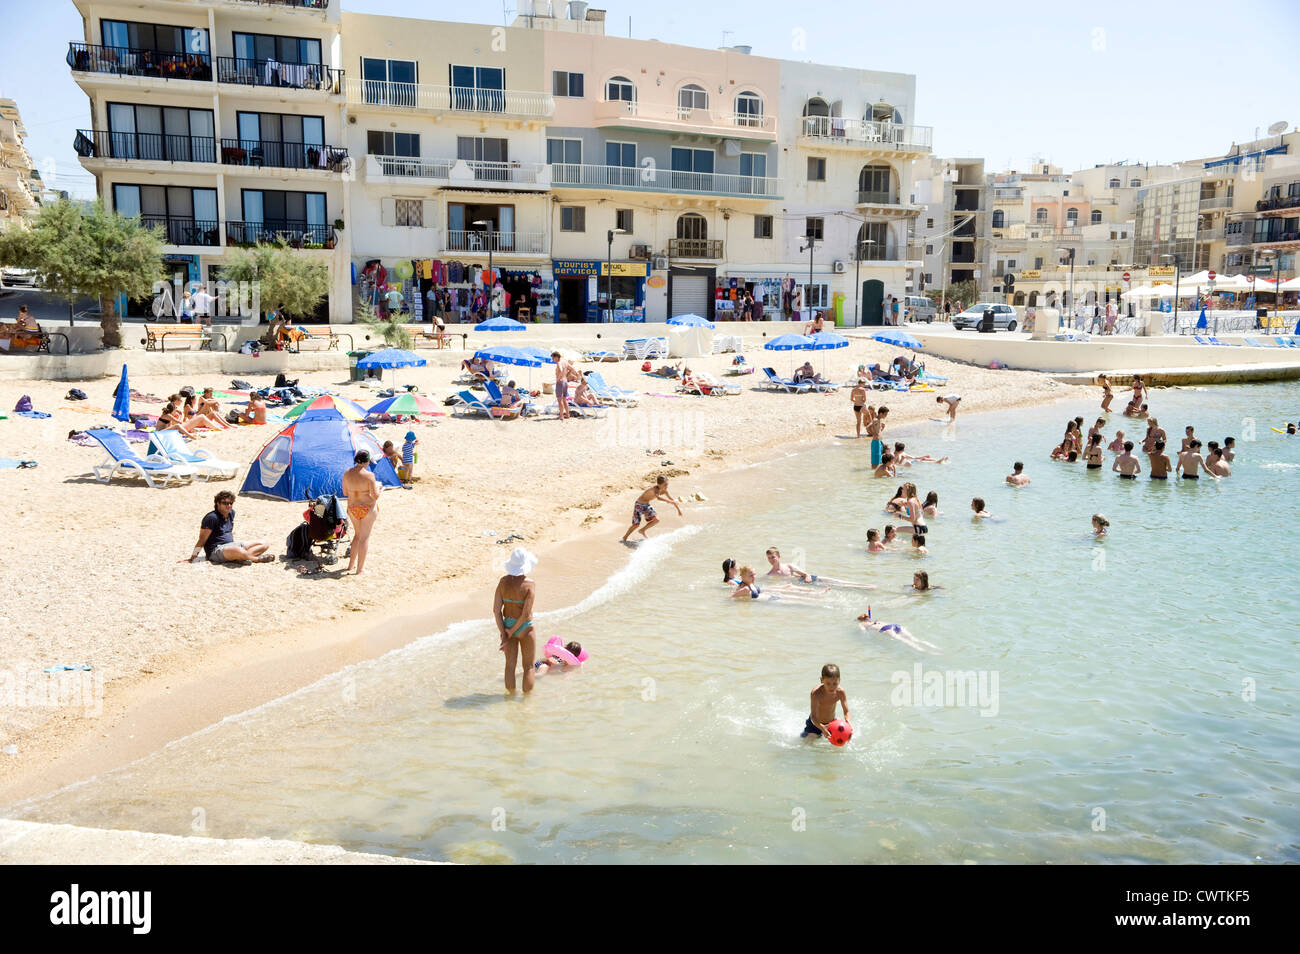 Les touristes et les habitants sur la plage à Marsalforn sur l'île de Gozo, Malte. Banque D'Images